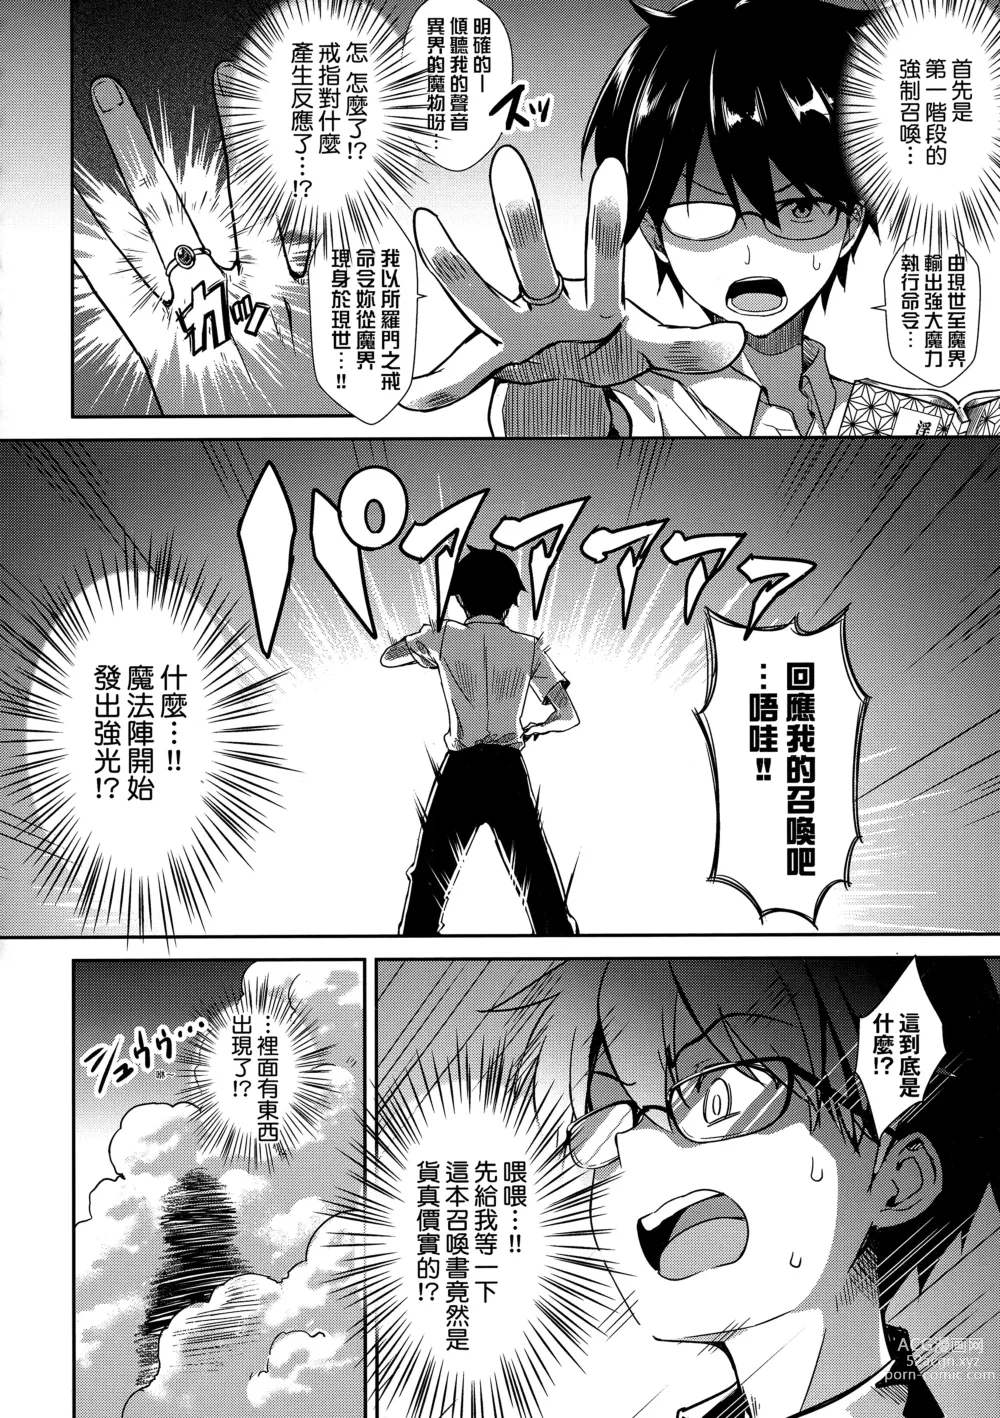 Page 29 of manga 鄰居家的傲嬌淫魔美眉 (decensored)